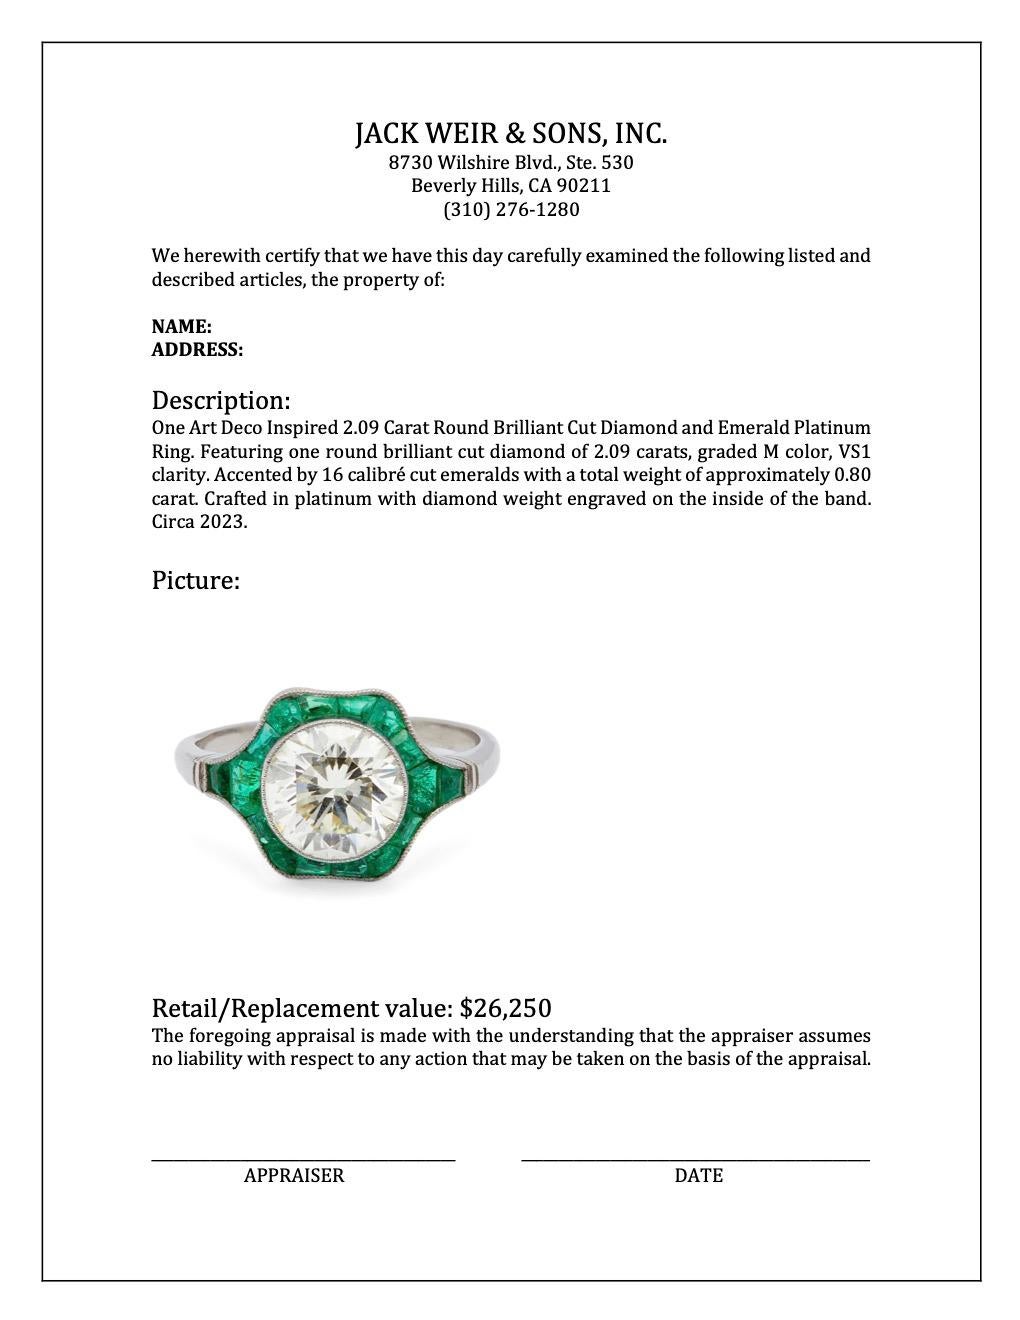 Art Deco Inspired 2.09 Carat Round Brilliant Cut Diamond Emerald Platinum Ring For Sale 1